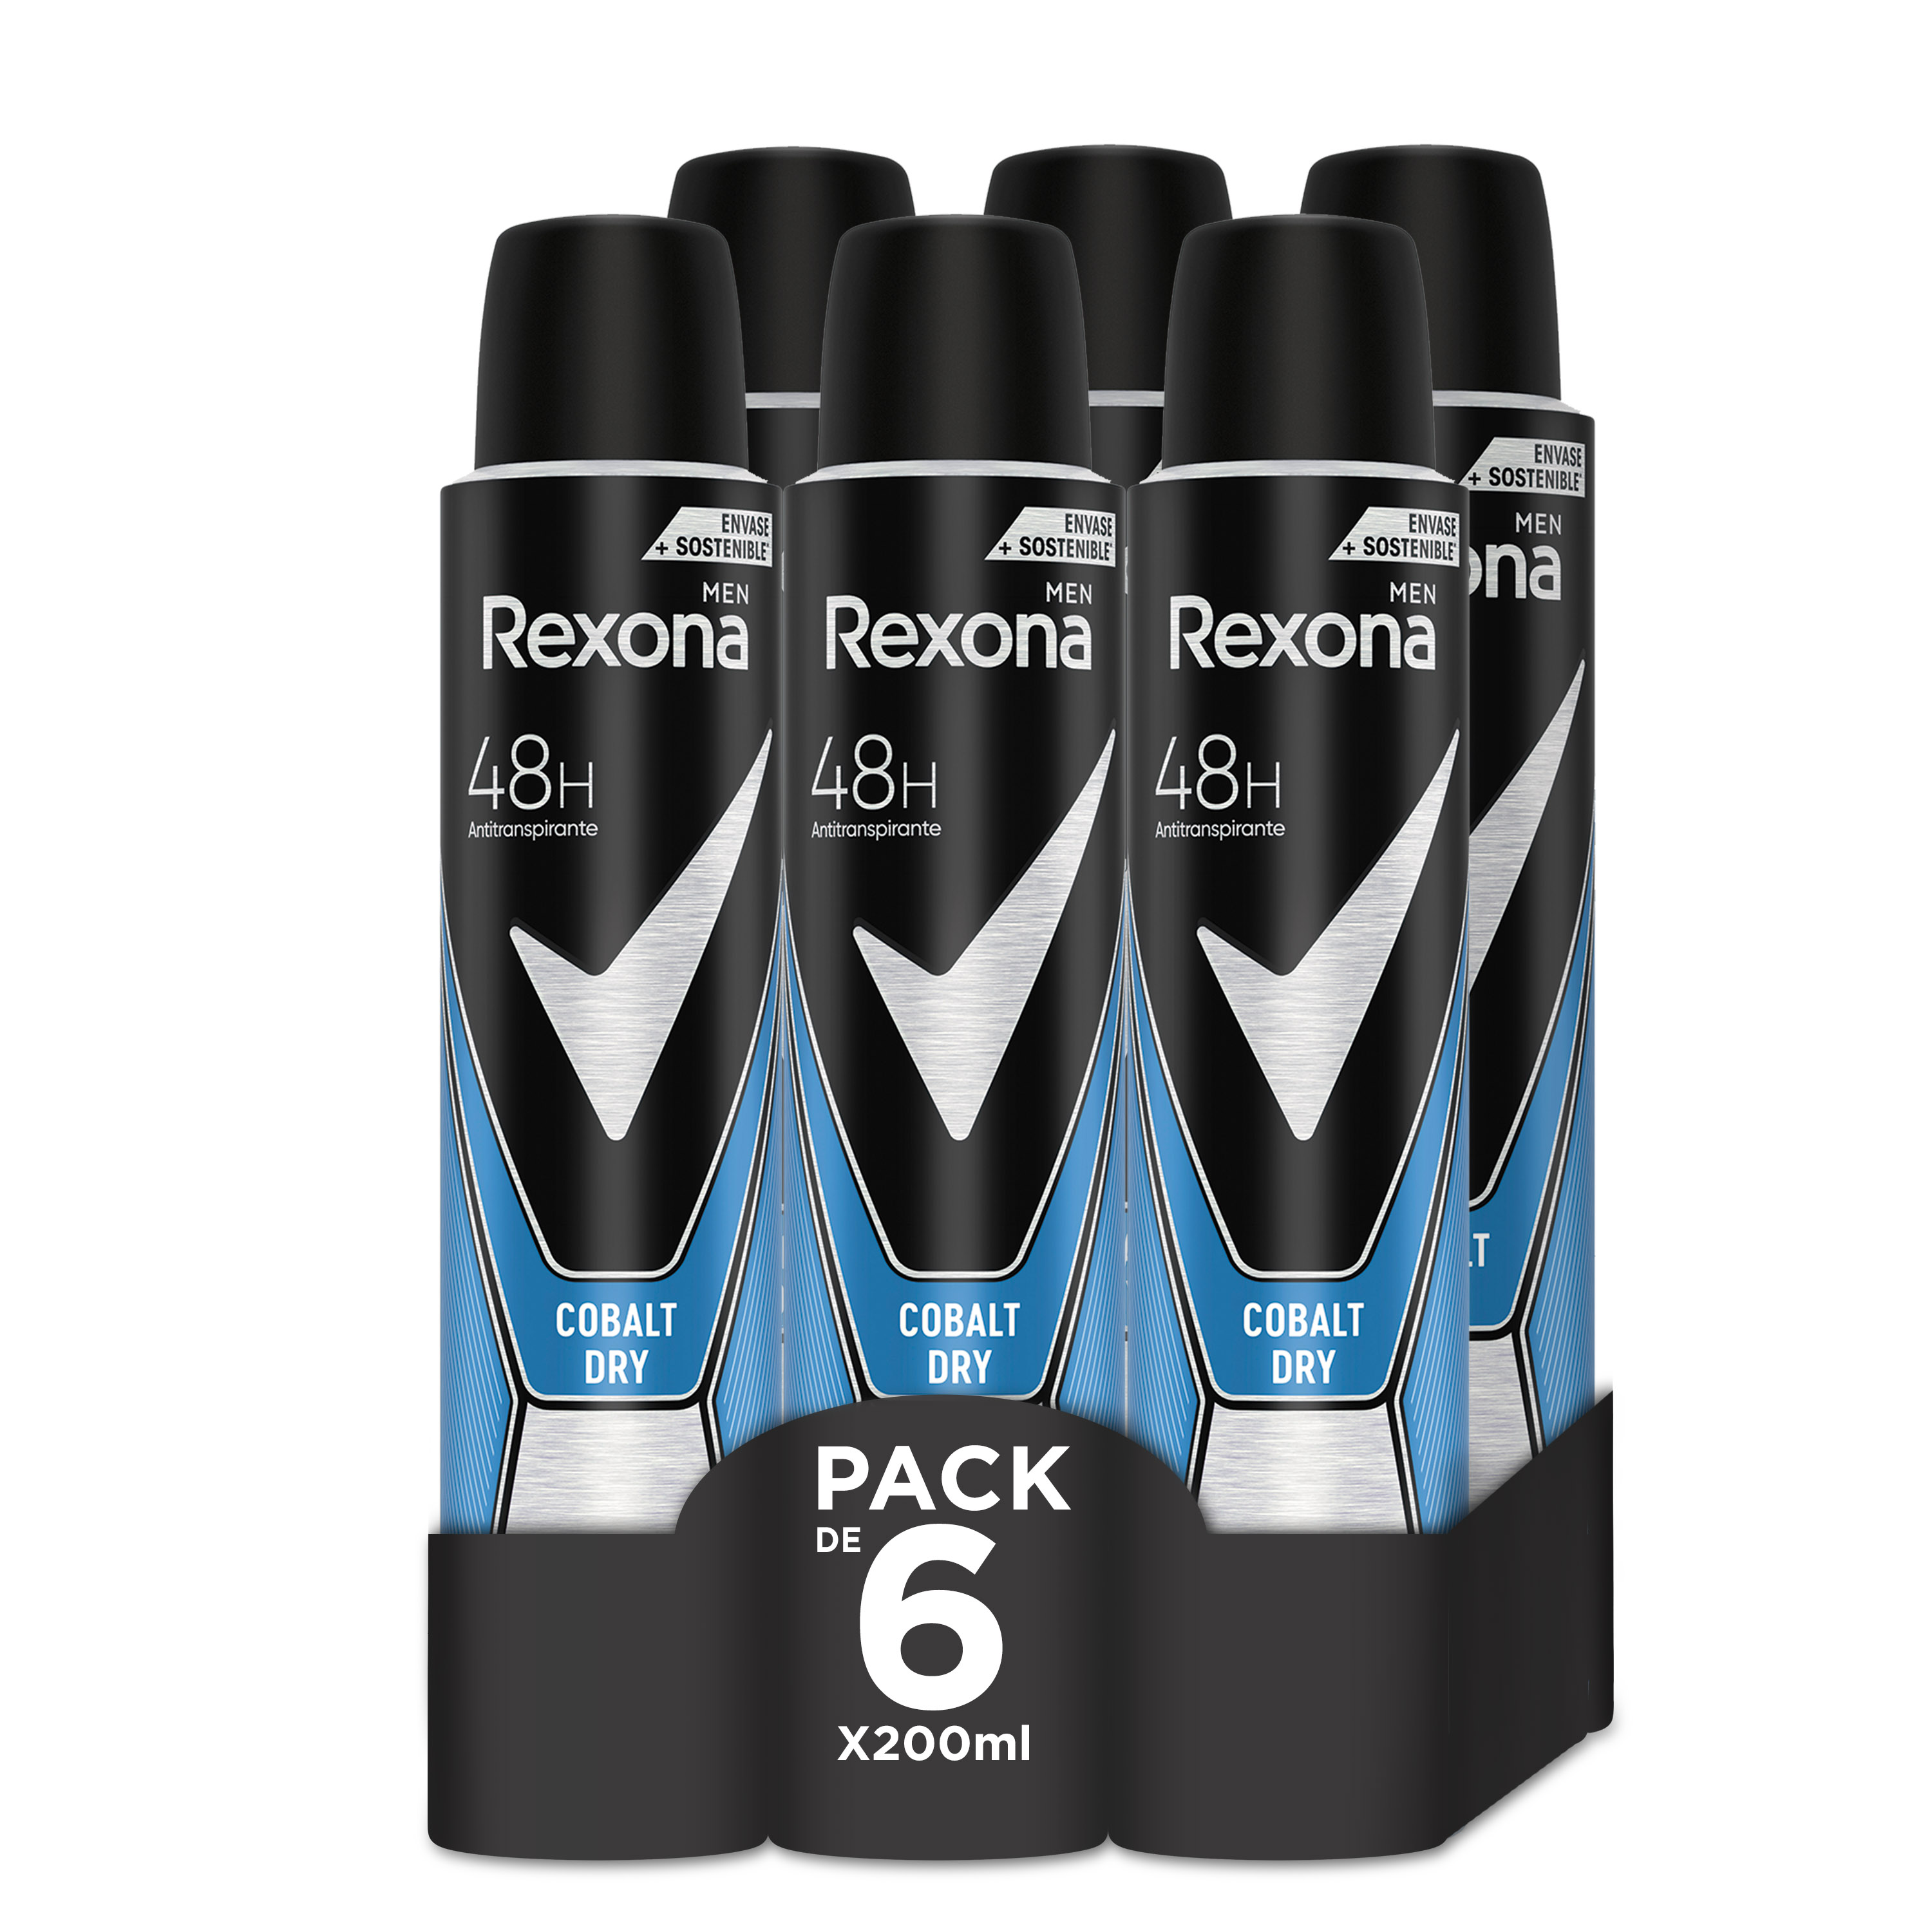 Rexona - Rexona Desodorante Cobalt Dry 48 horas de protección contra el sudor y mal olor 200ml - Pack de 6